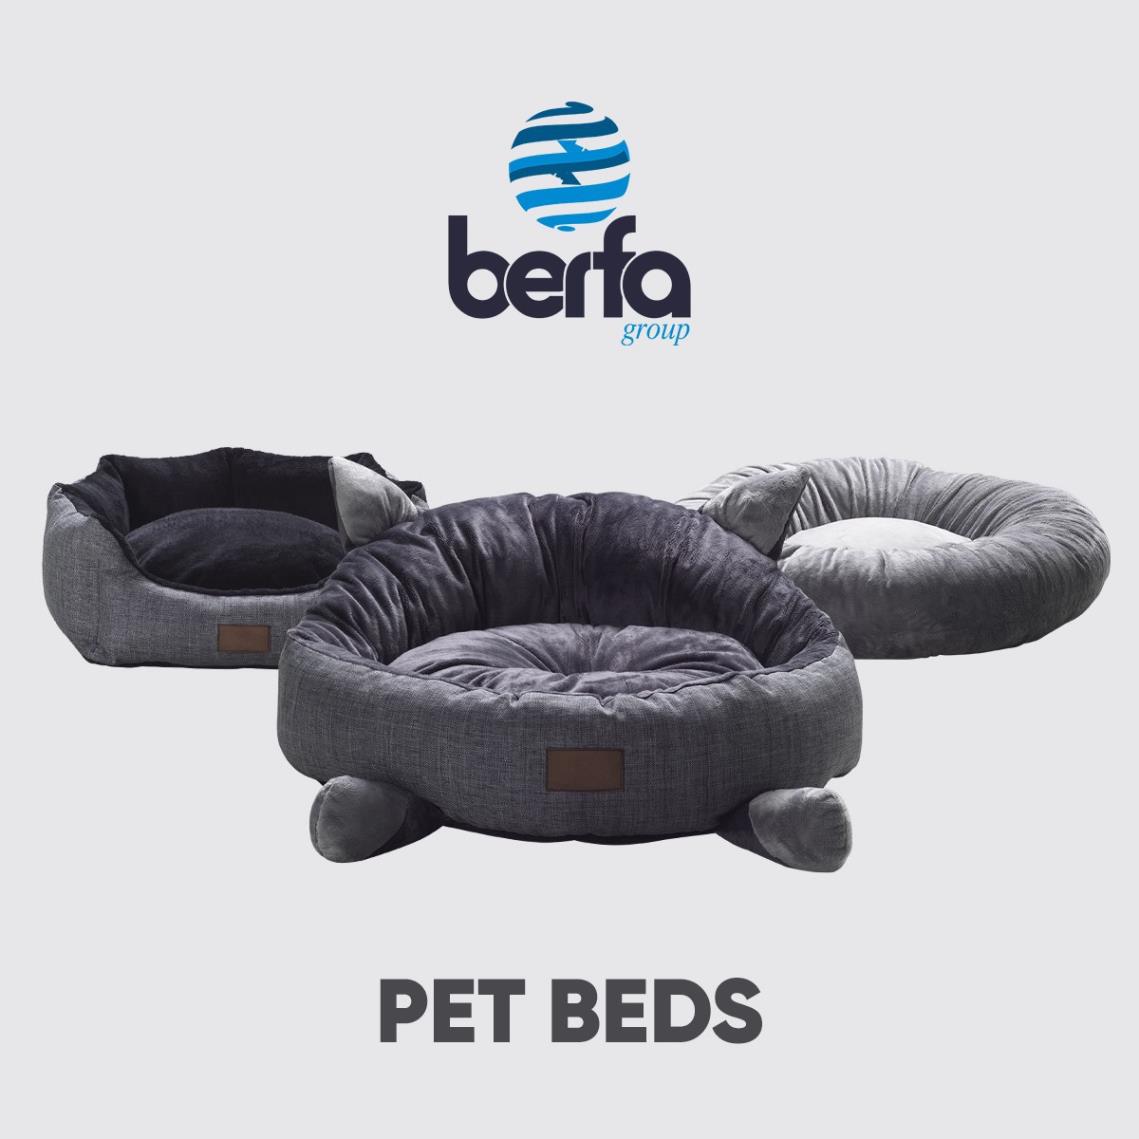 Pet Beds